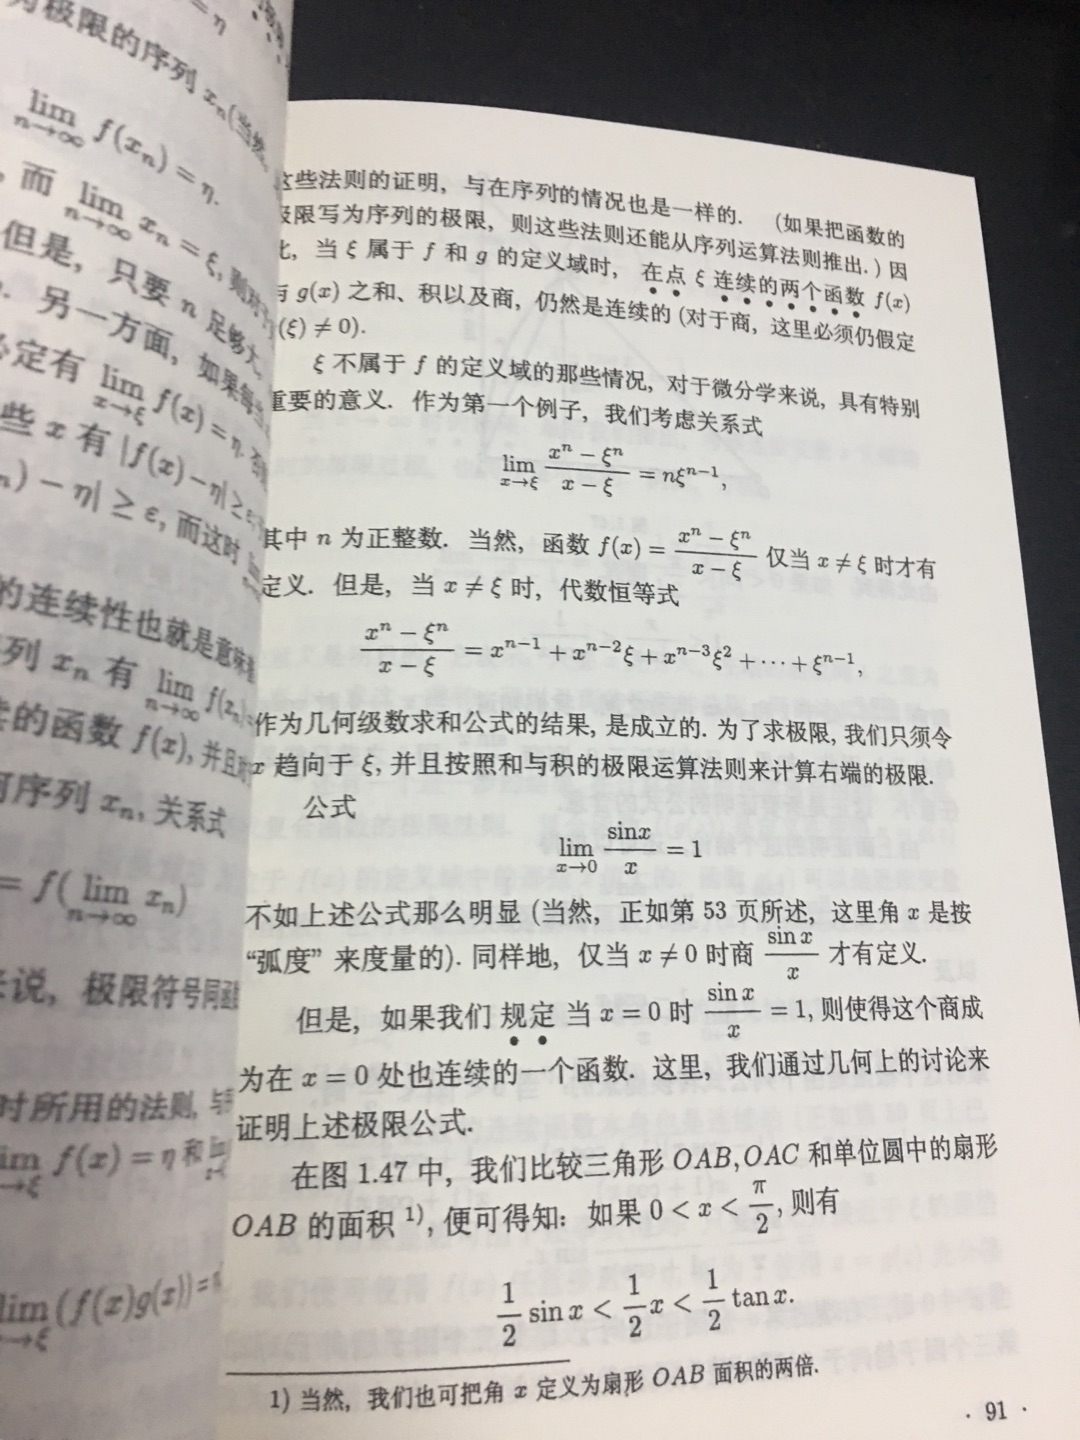 像这种关于数学的中译本买了很多了。